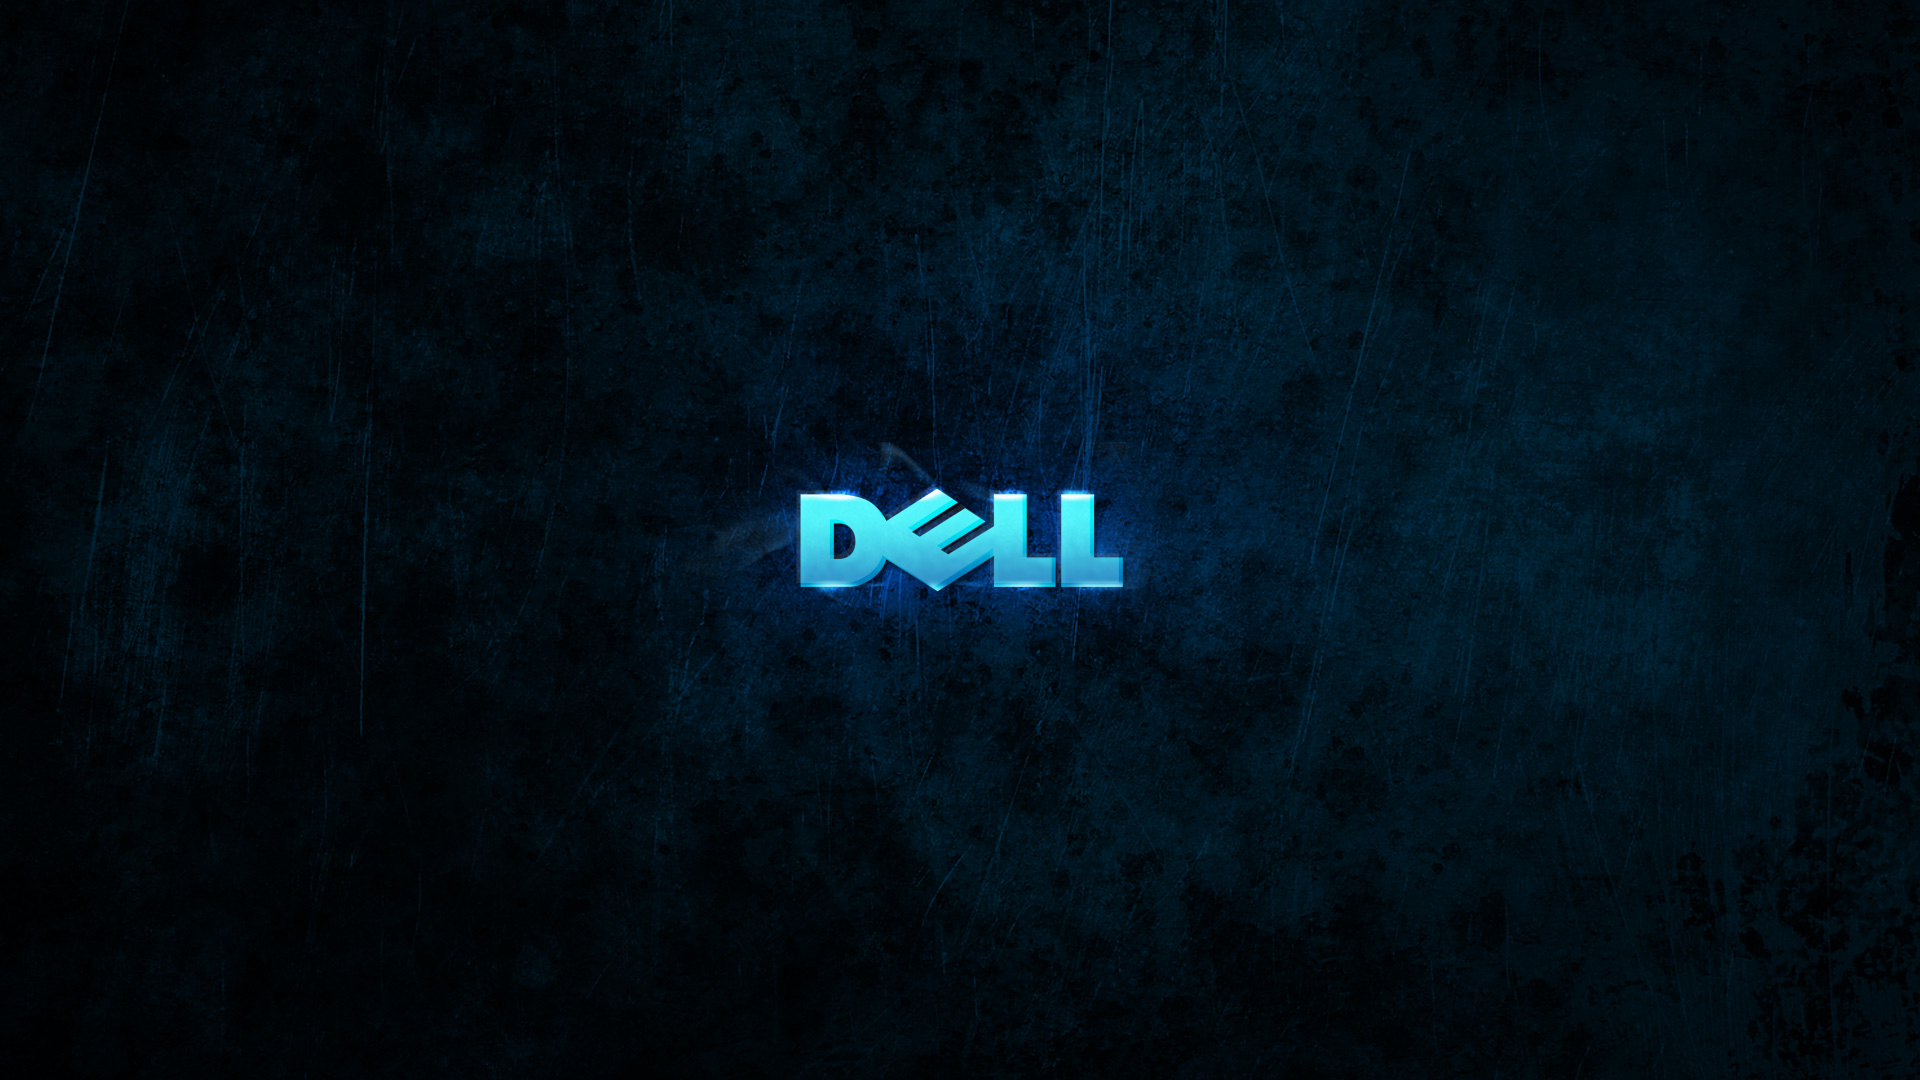 Dell 4k Wallpaper